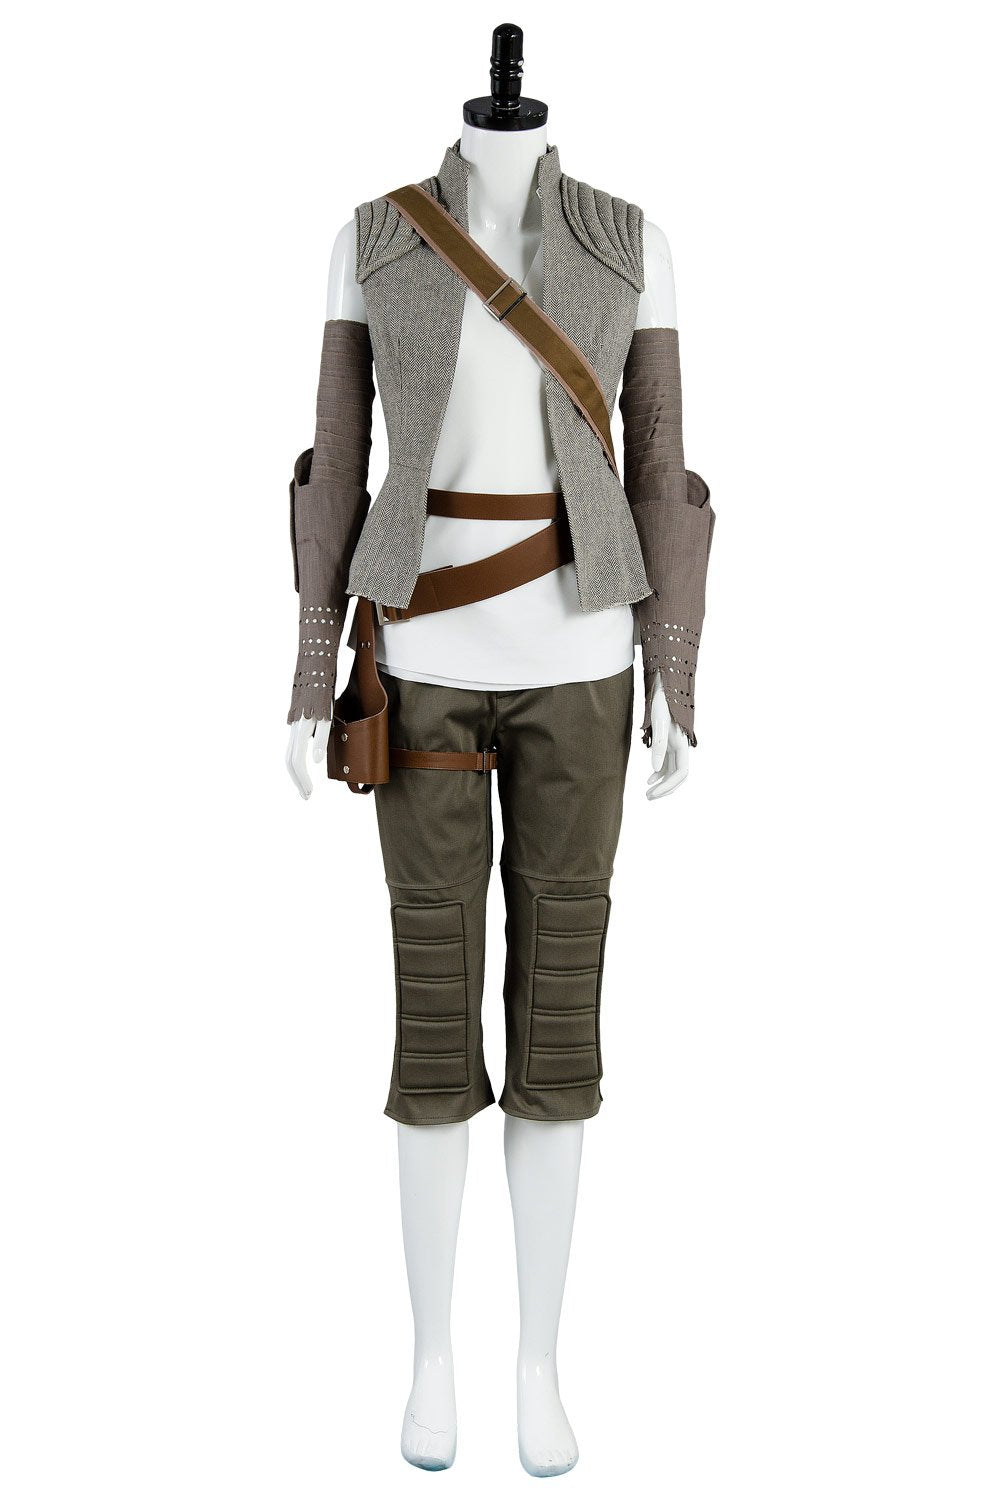 Star Wars 8 Die letzten Jedi Rey Outfit Cosplay Kostüm